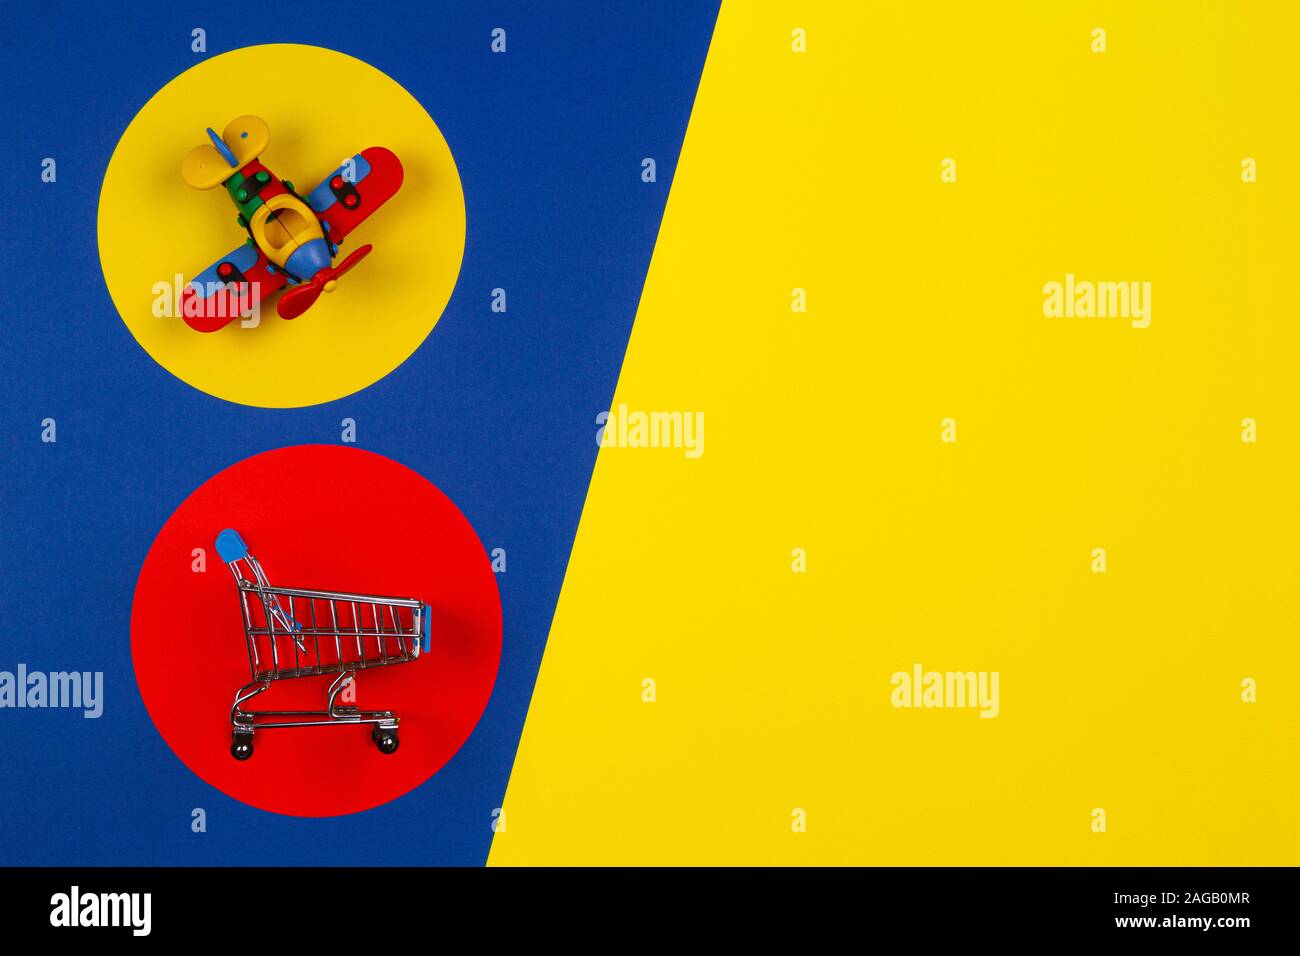 Mini Einkaufswagen Warenkorb und kleines Spielzeug Flugzeug auf Rot Gelb  navy blauen Hintergrund. Spielzeug, Kinder, online einkaufen, kaufen,  Verkauf, Rabatt Konzept Stockfotografie - Alamy